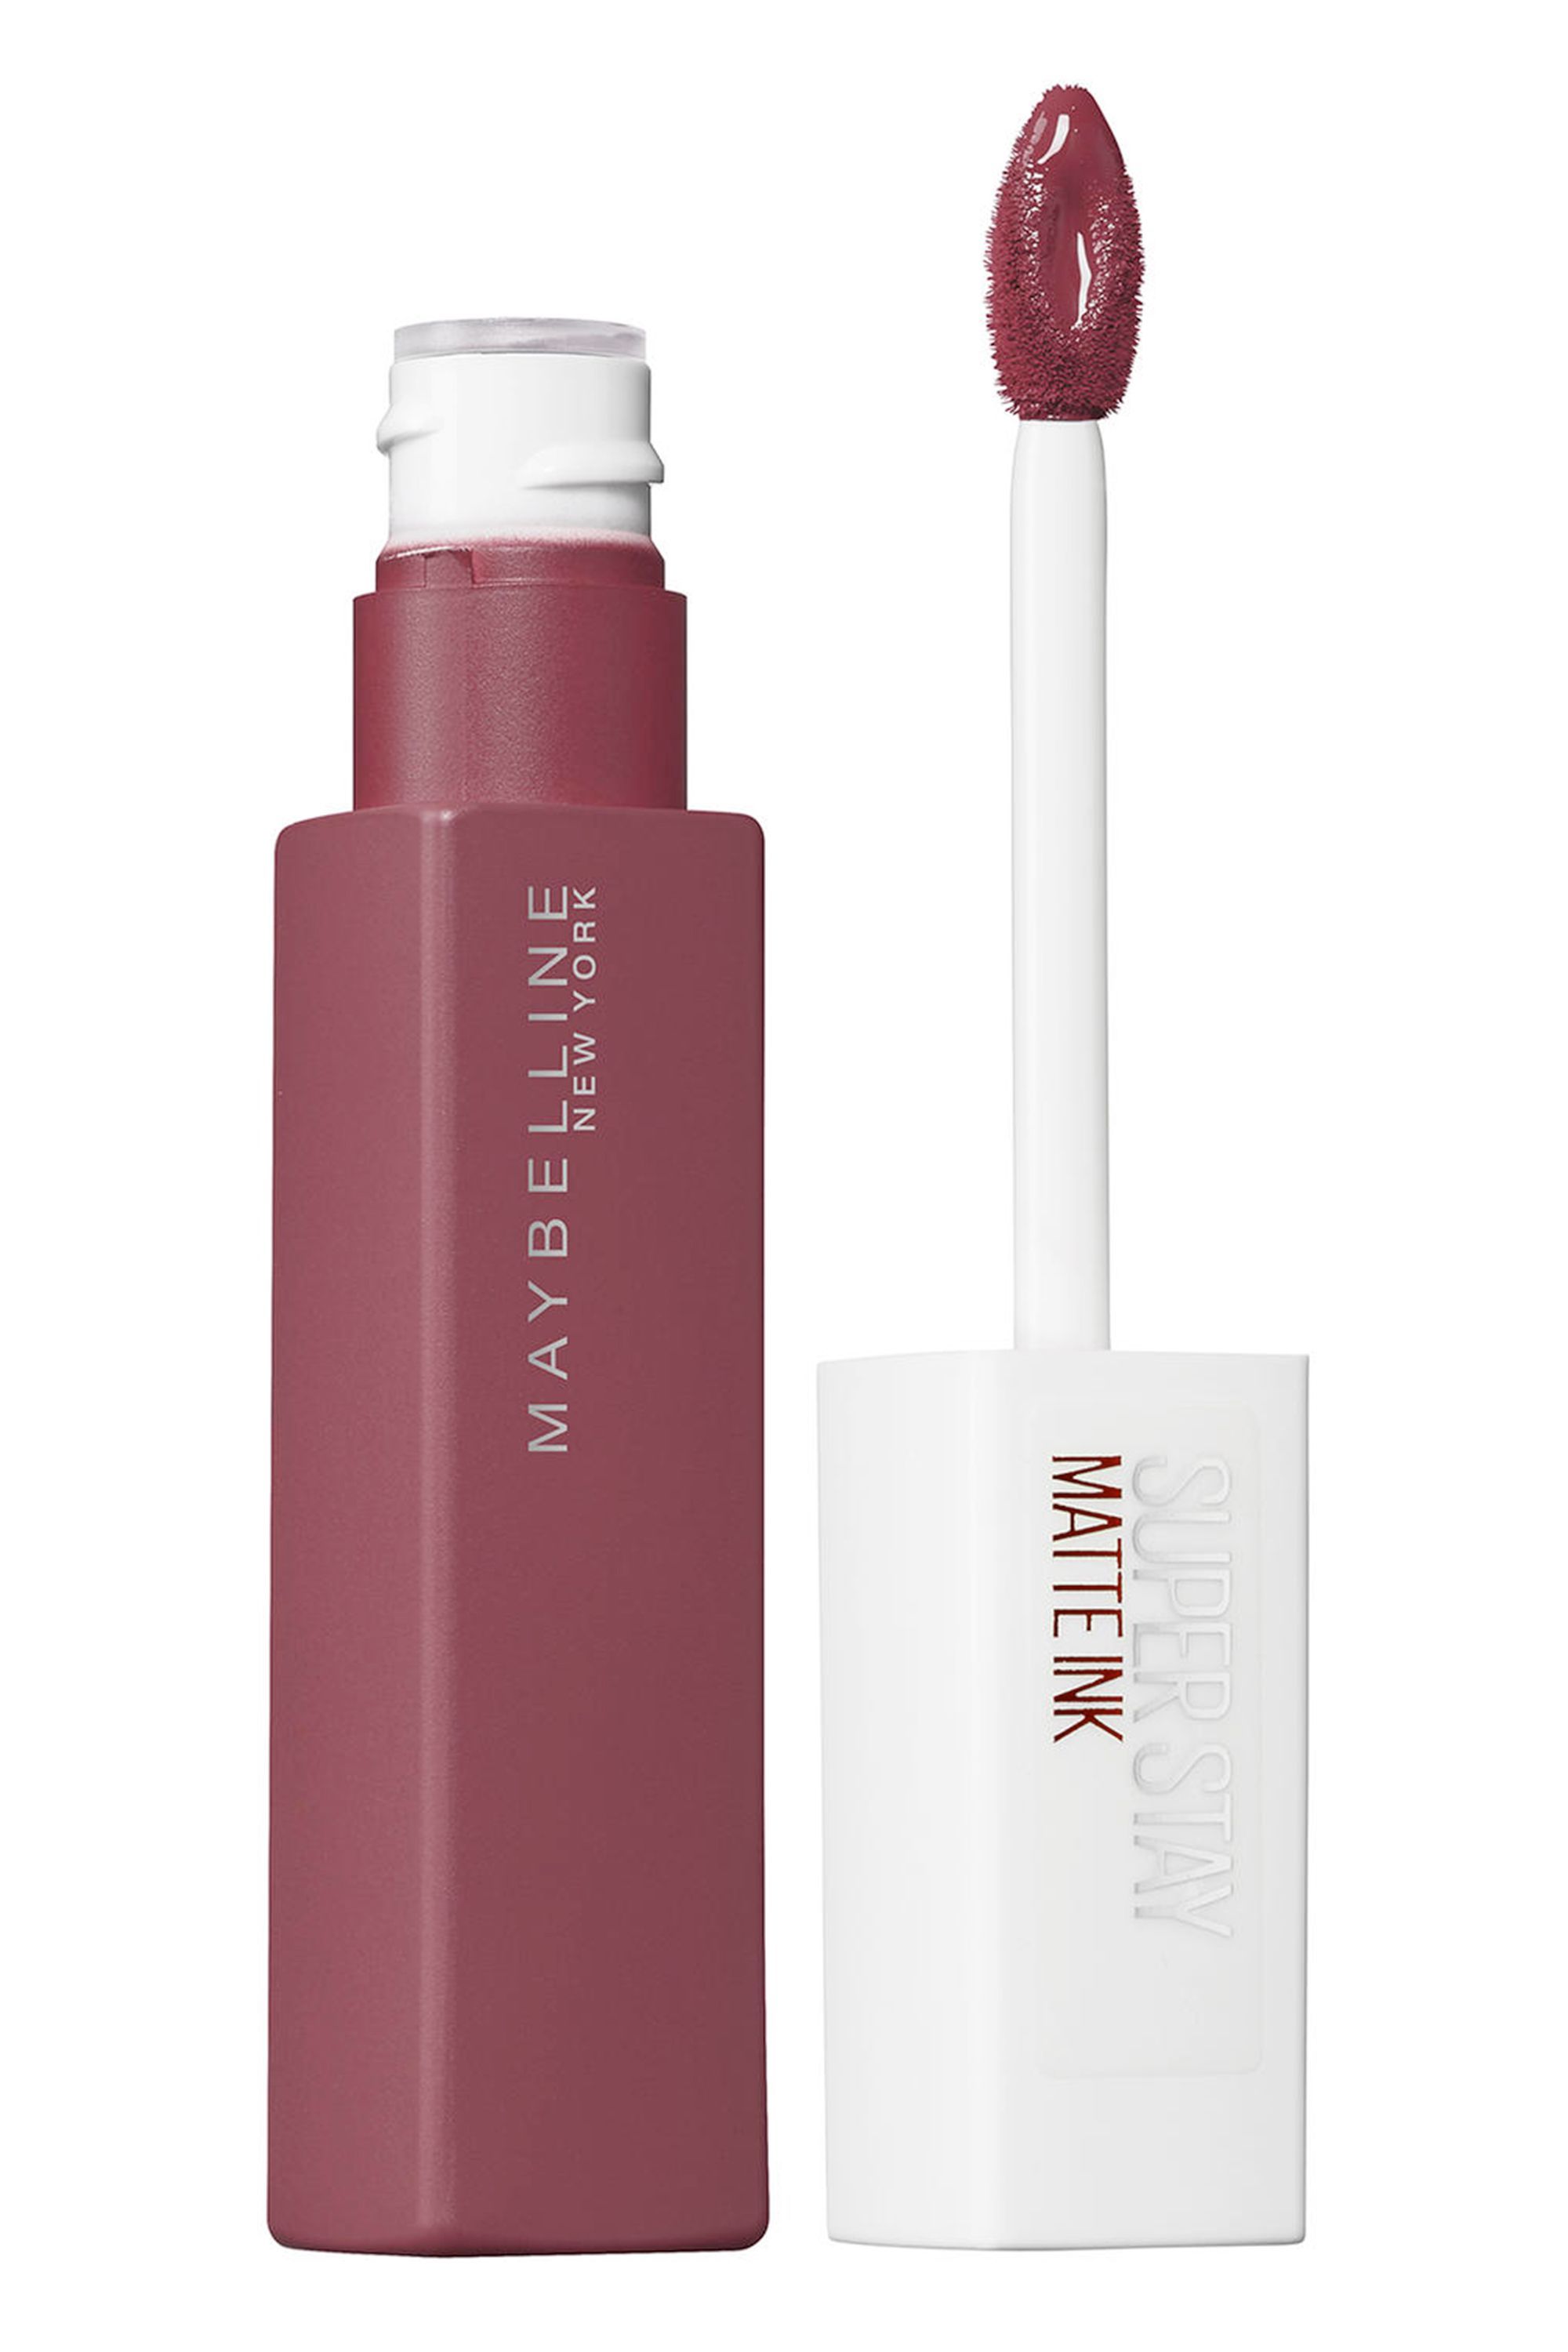 Augment deeltje jury 12 Waterproof Lipsticks That We Swear By - Best Long-Lasting Lipsticks to  Try